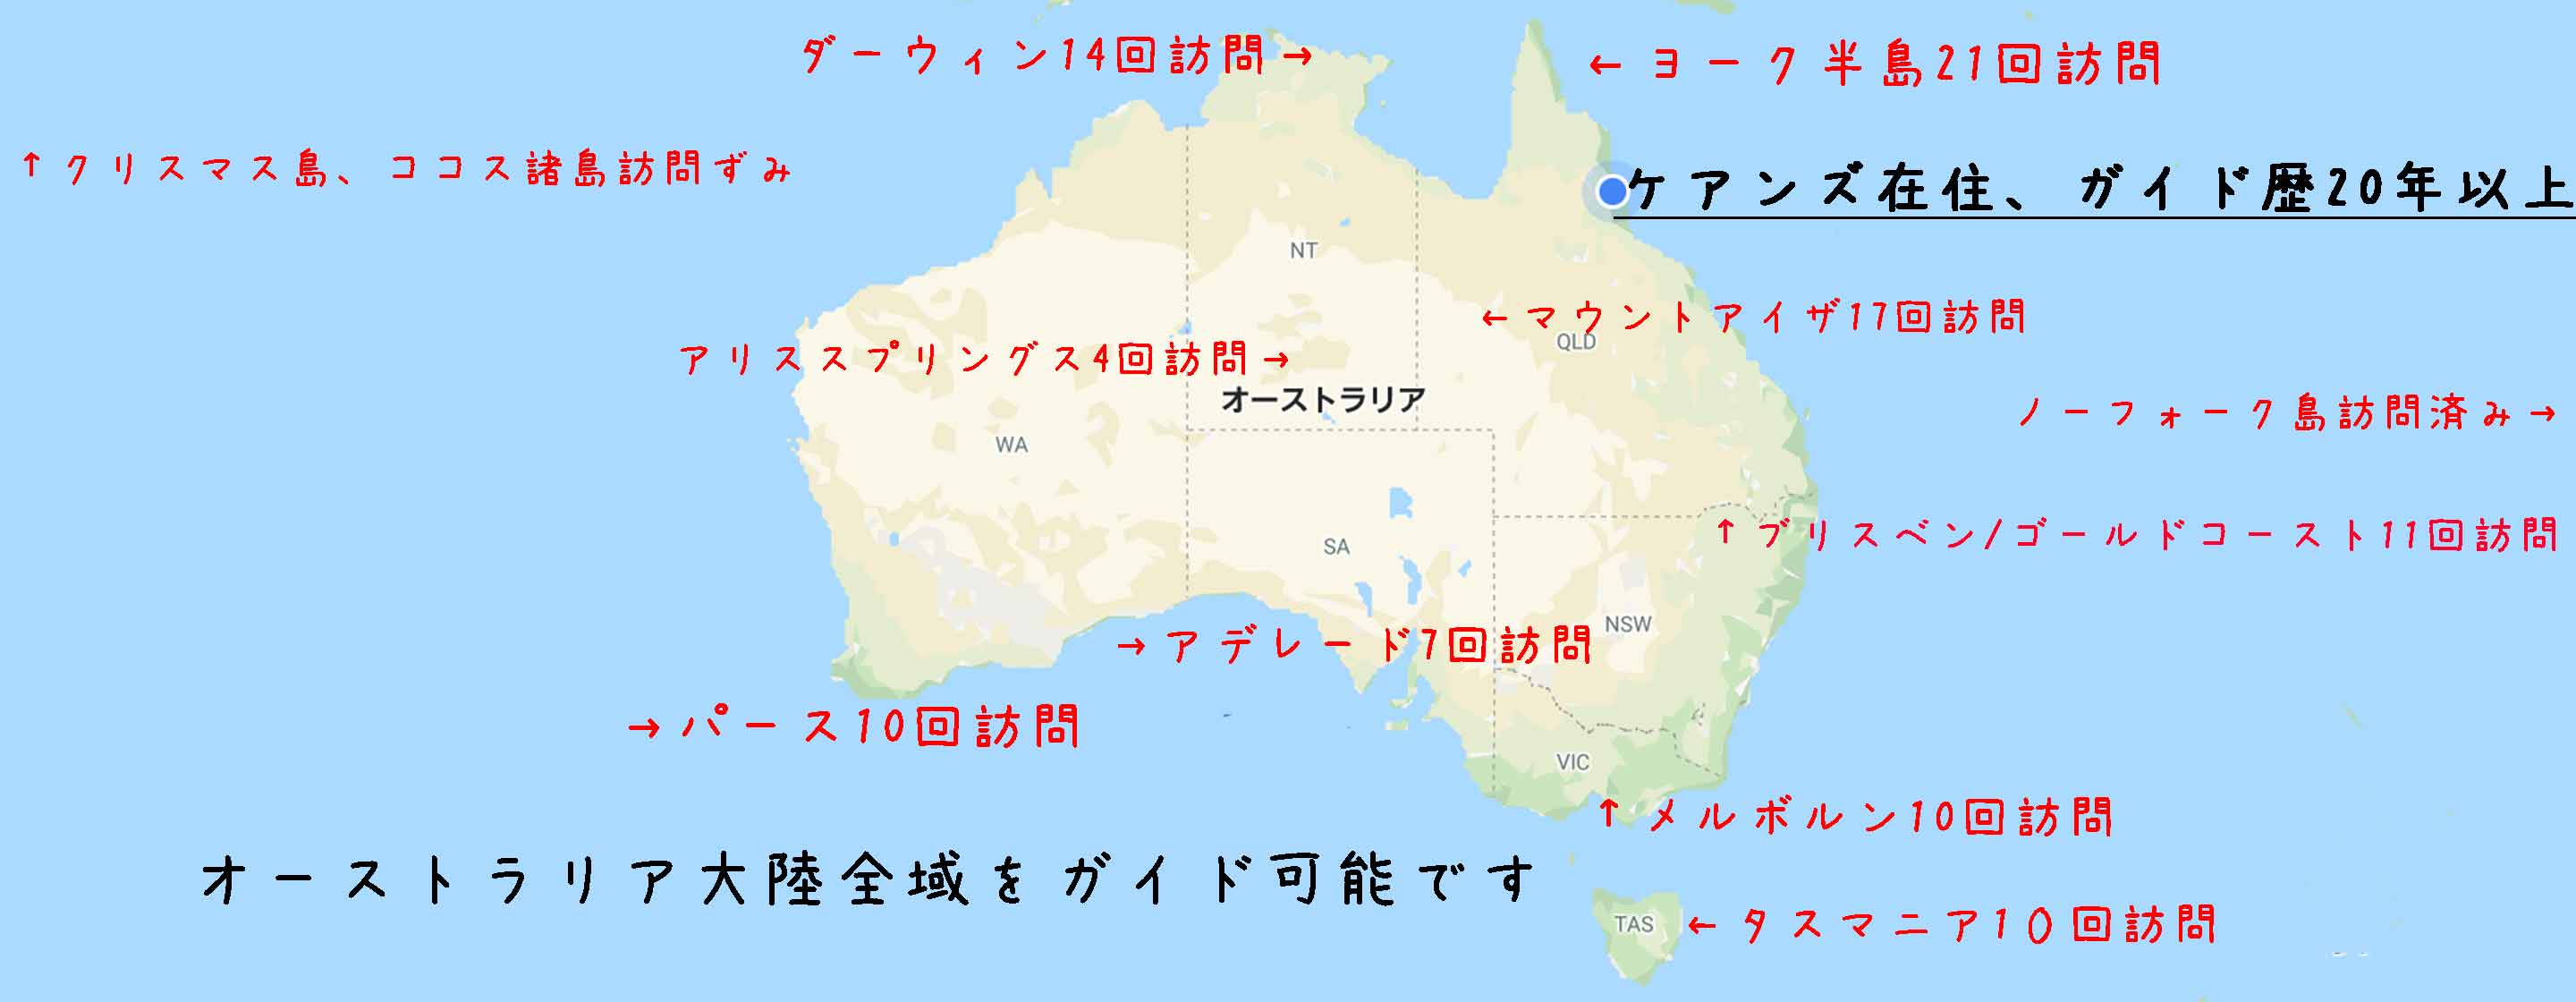 オーストラリア全国の探鳥地マップ